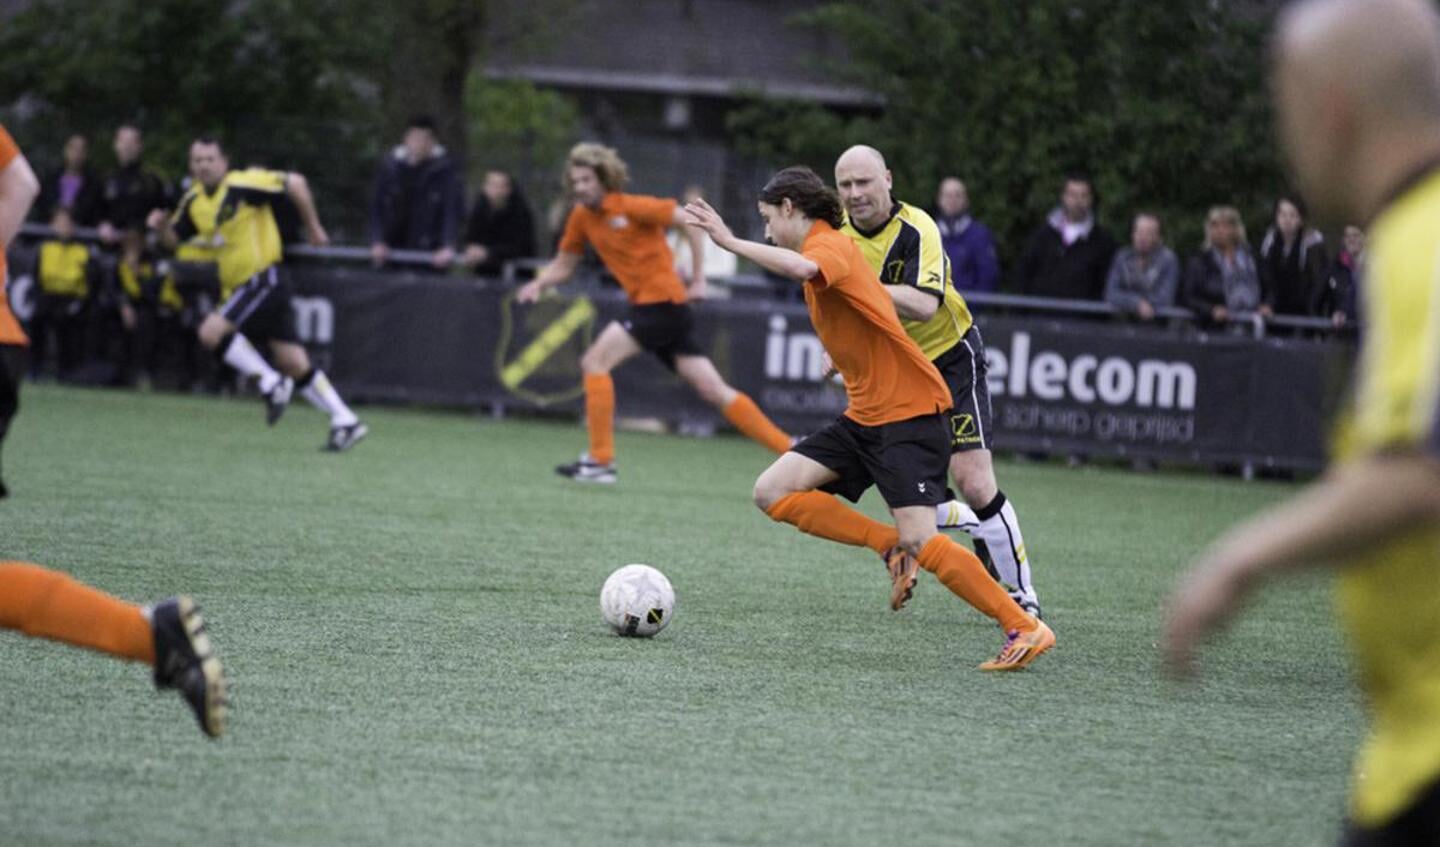 Oud-NAC speelde donderdag een wedstrijd tegen Graaf Engelbrecht. De opbrengst ging naar Join4Energy. foto Vinnie de Laat